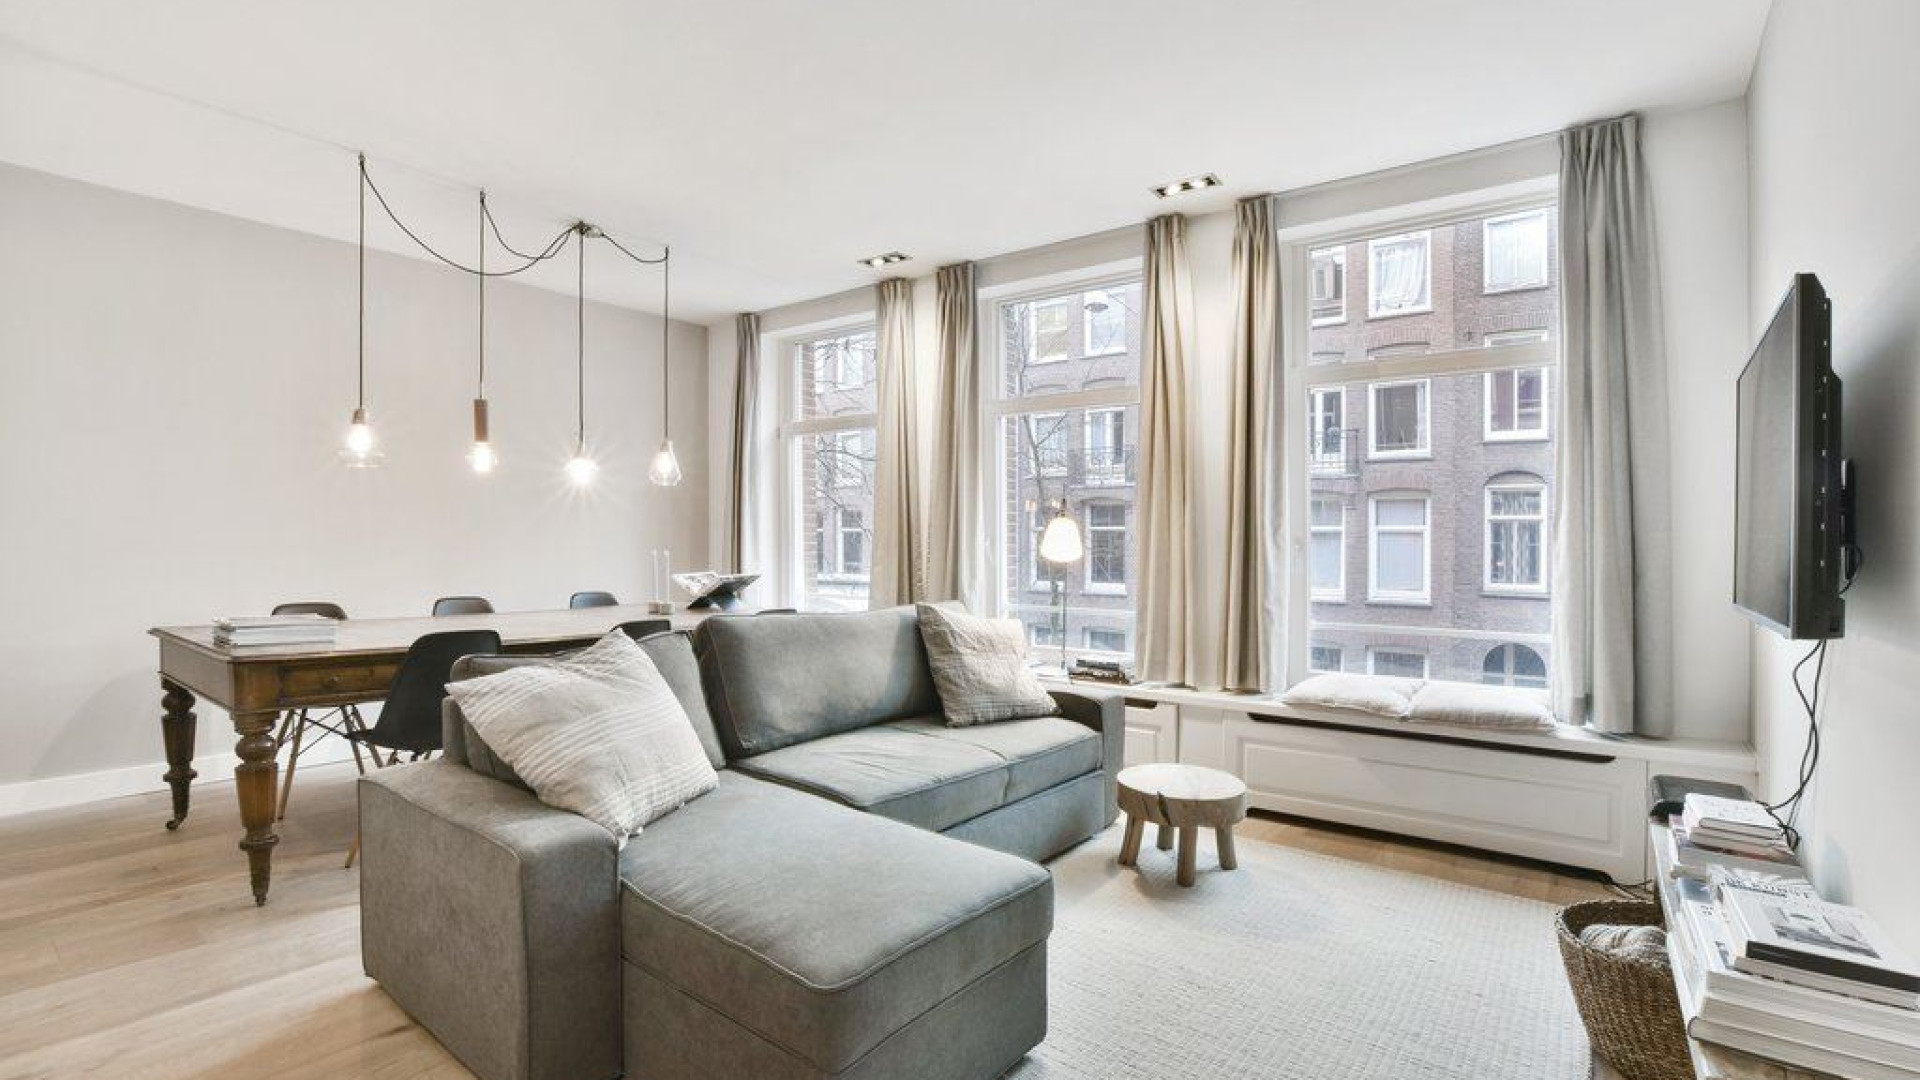 Humberto Tan verhuurt zijn appartement in de Pijp in Amsterdam. Zie foto's 4